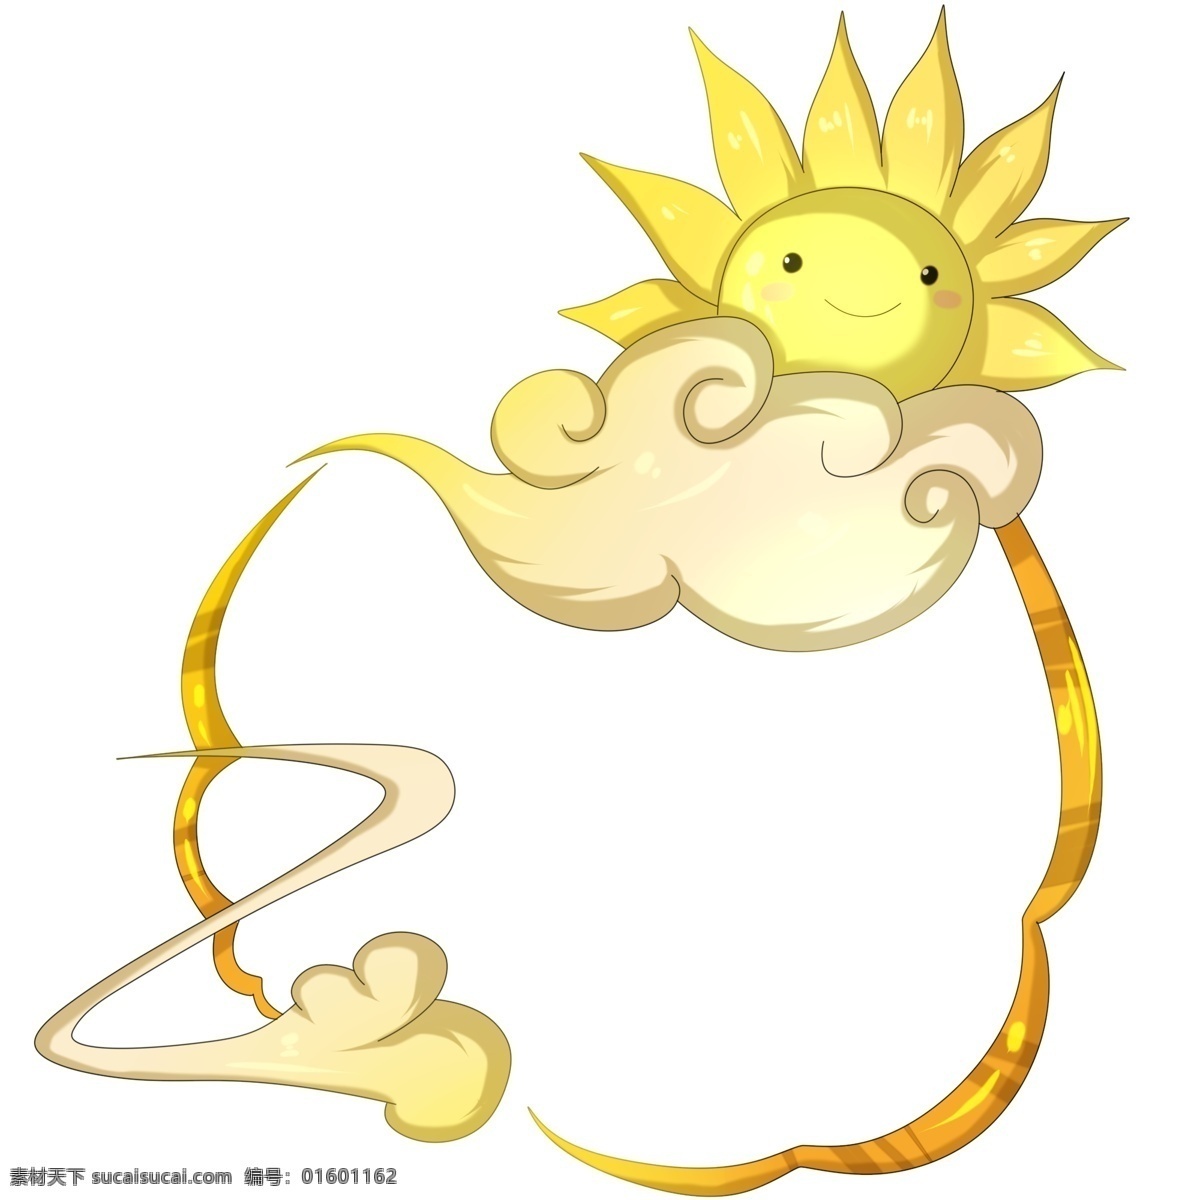 太阳 老公公 祥云 边框 卡通 可爱 祥云边框 手绘 太阳边框 可爱边框 可爱插画 黄色太阳